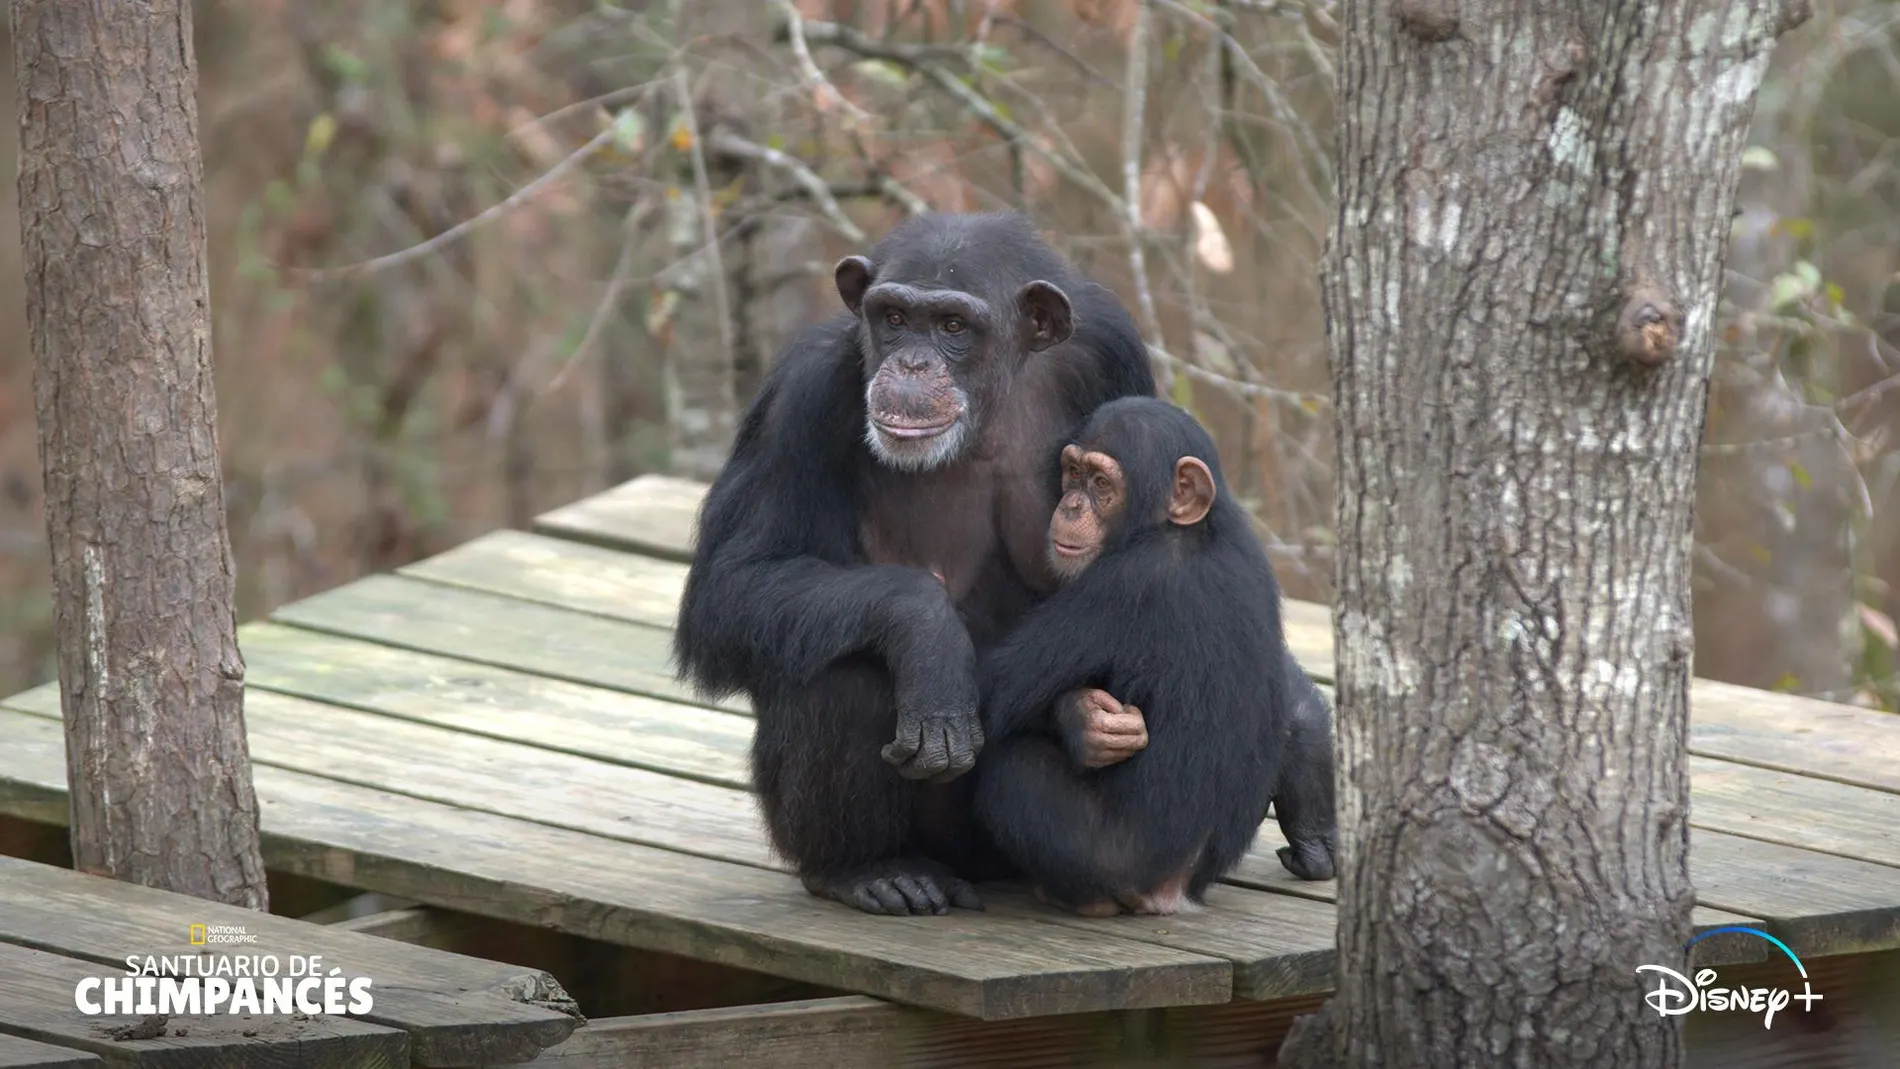 Docuserie "Santuario de Chimpancés"